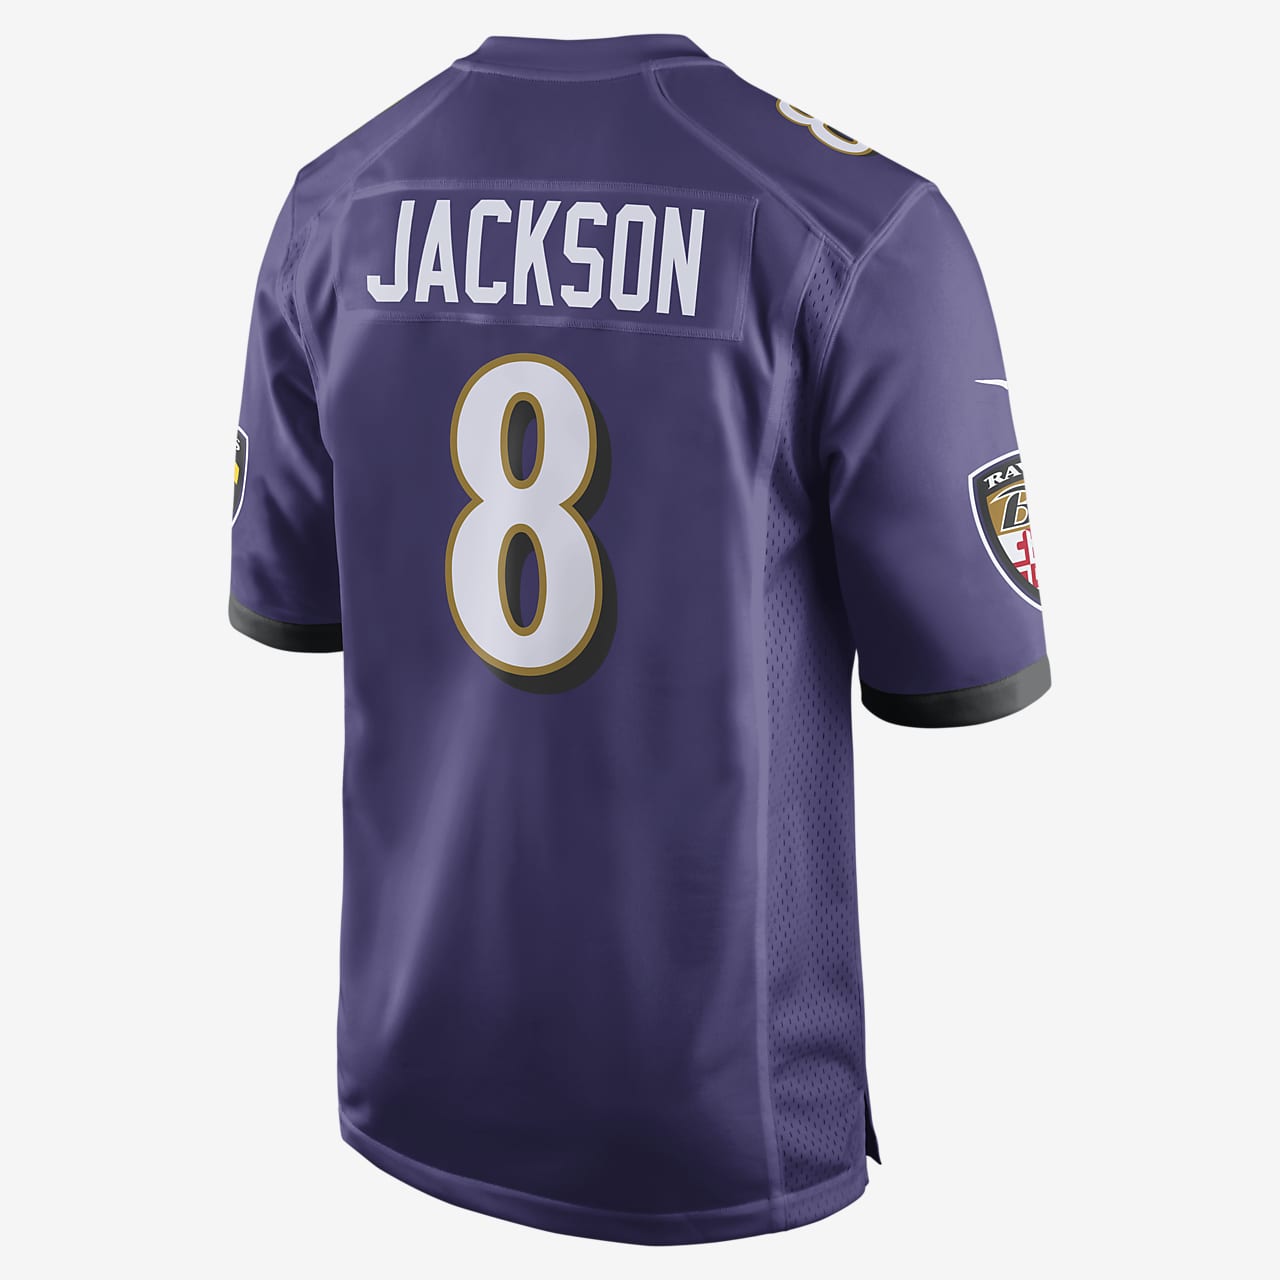 NFL Baltimore Ravens Game (Lamar Jackson) Men's Football Jersey